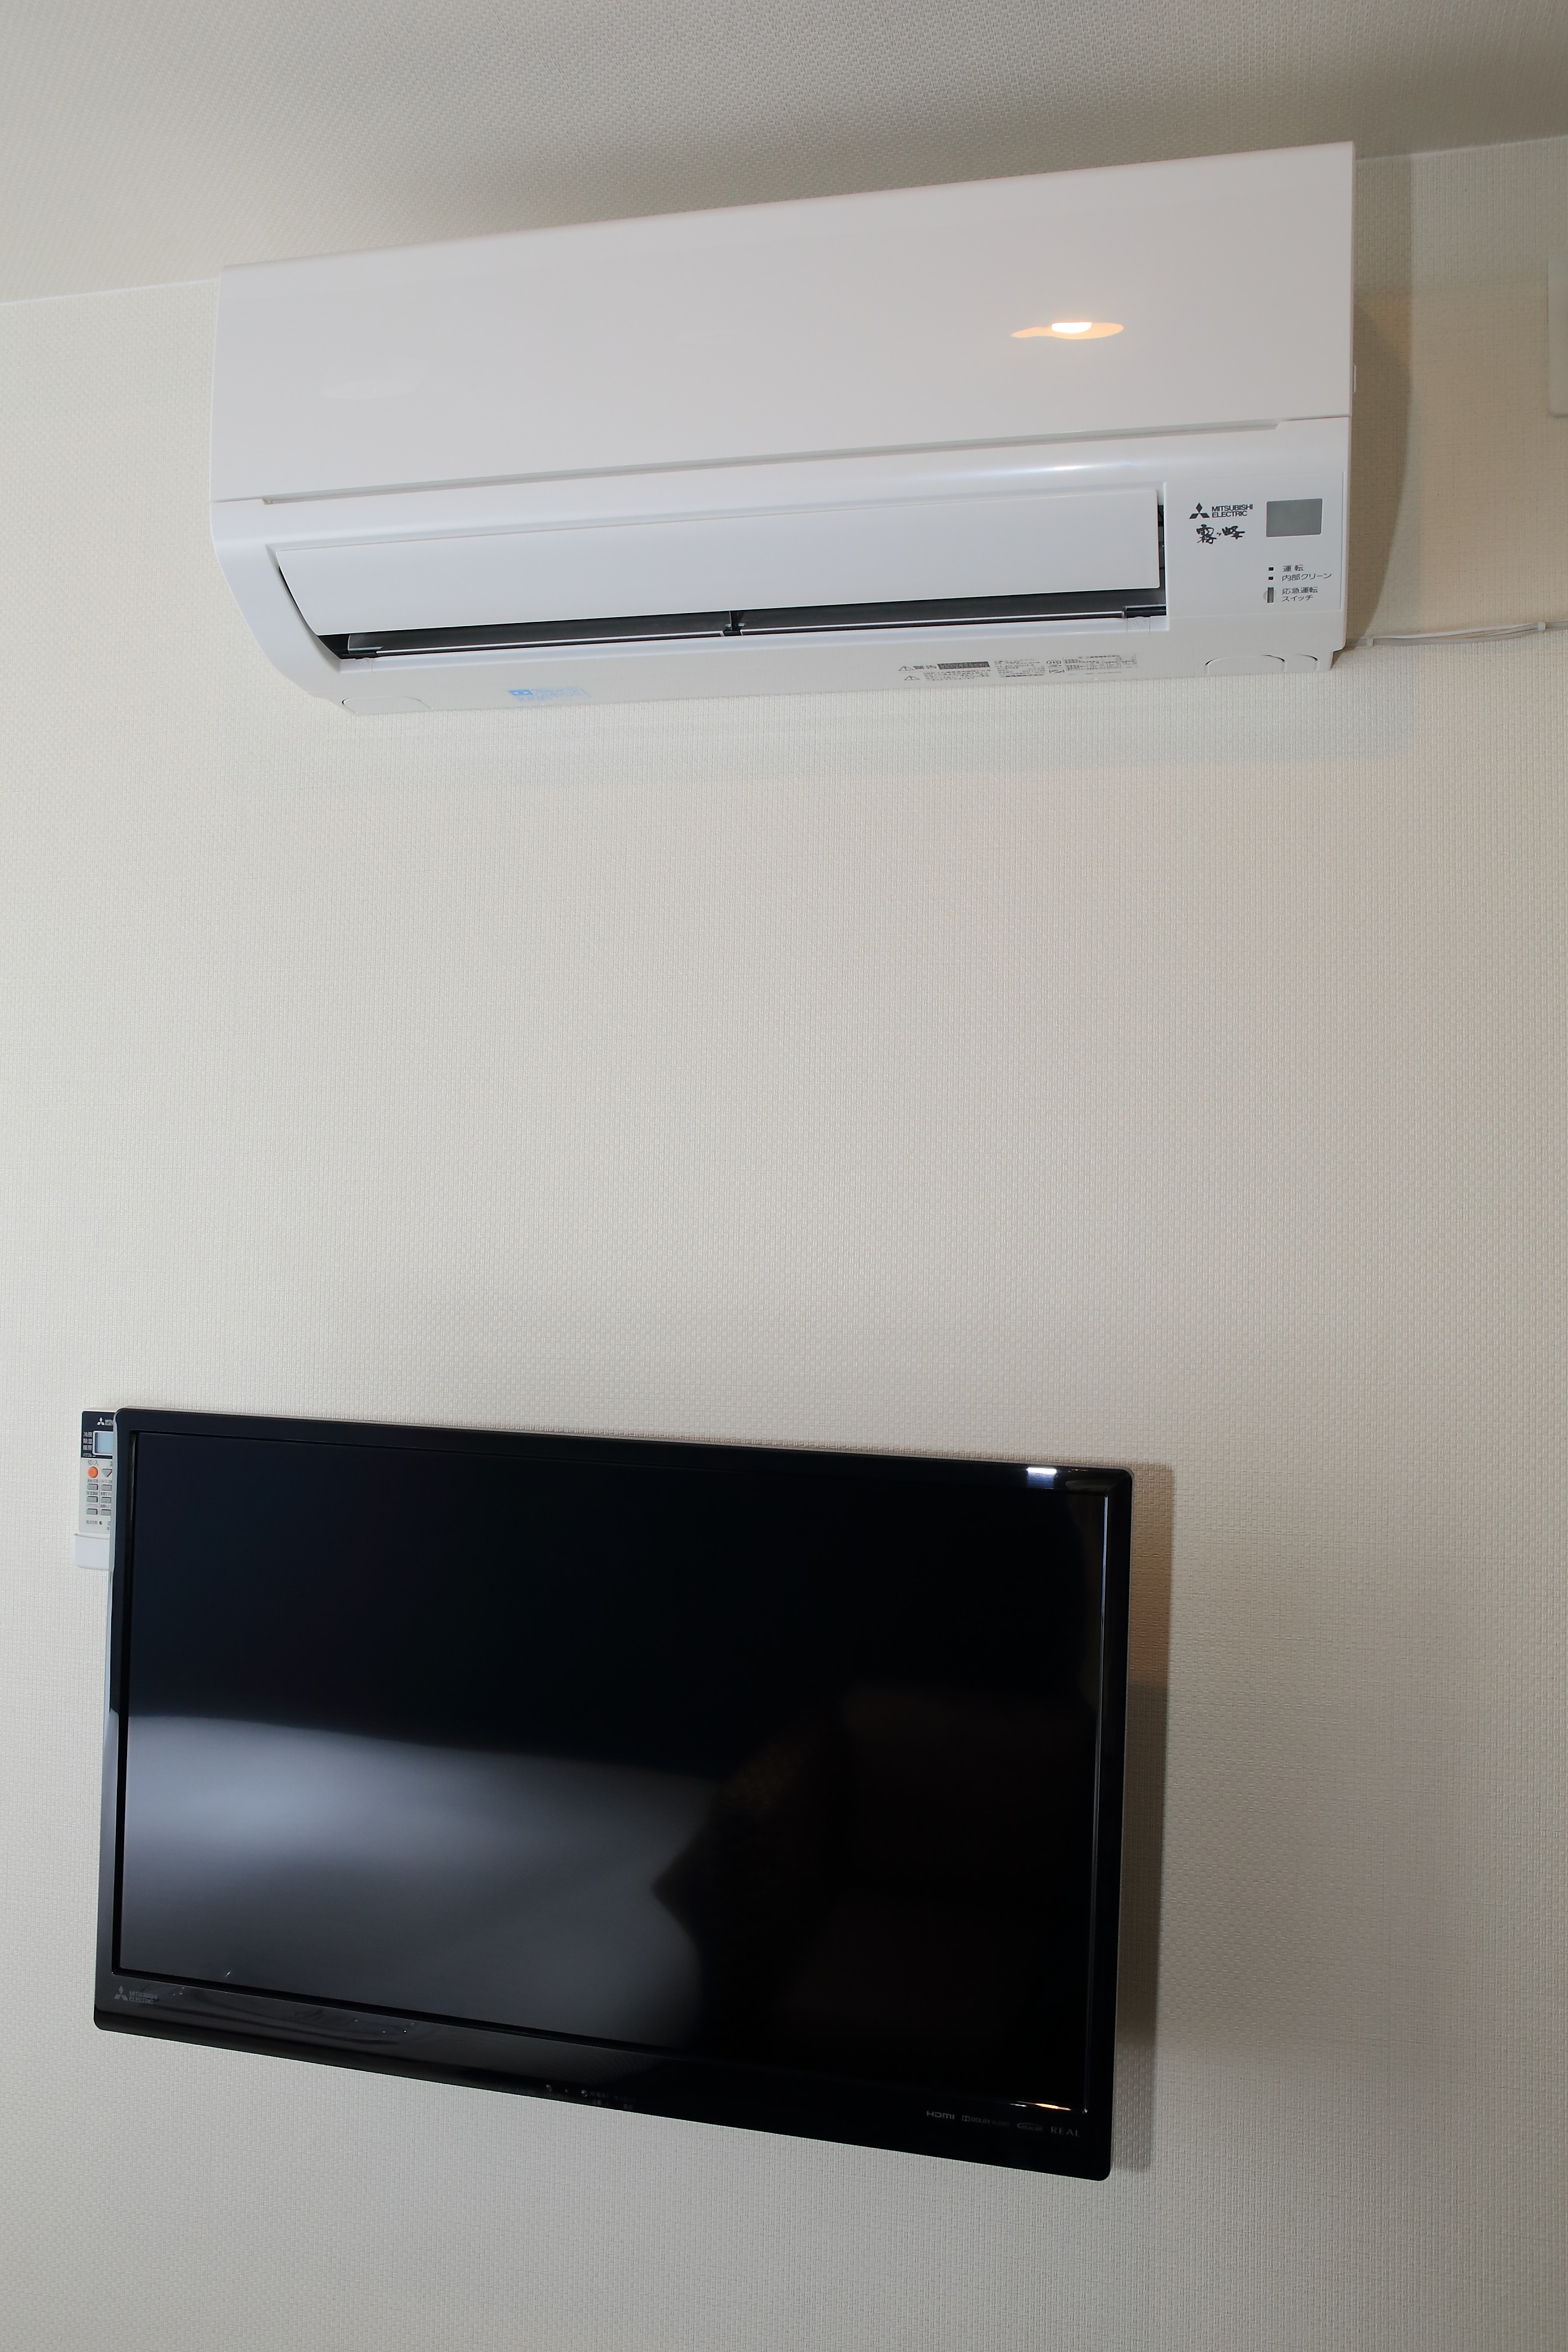 AC individu, TV 32 inci yang terpasang di dinding